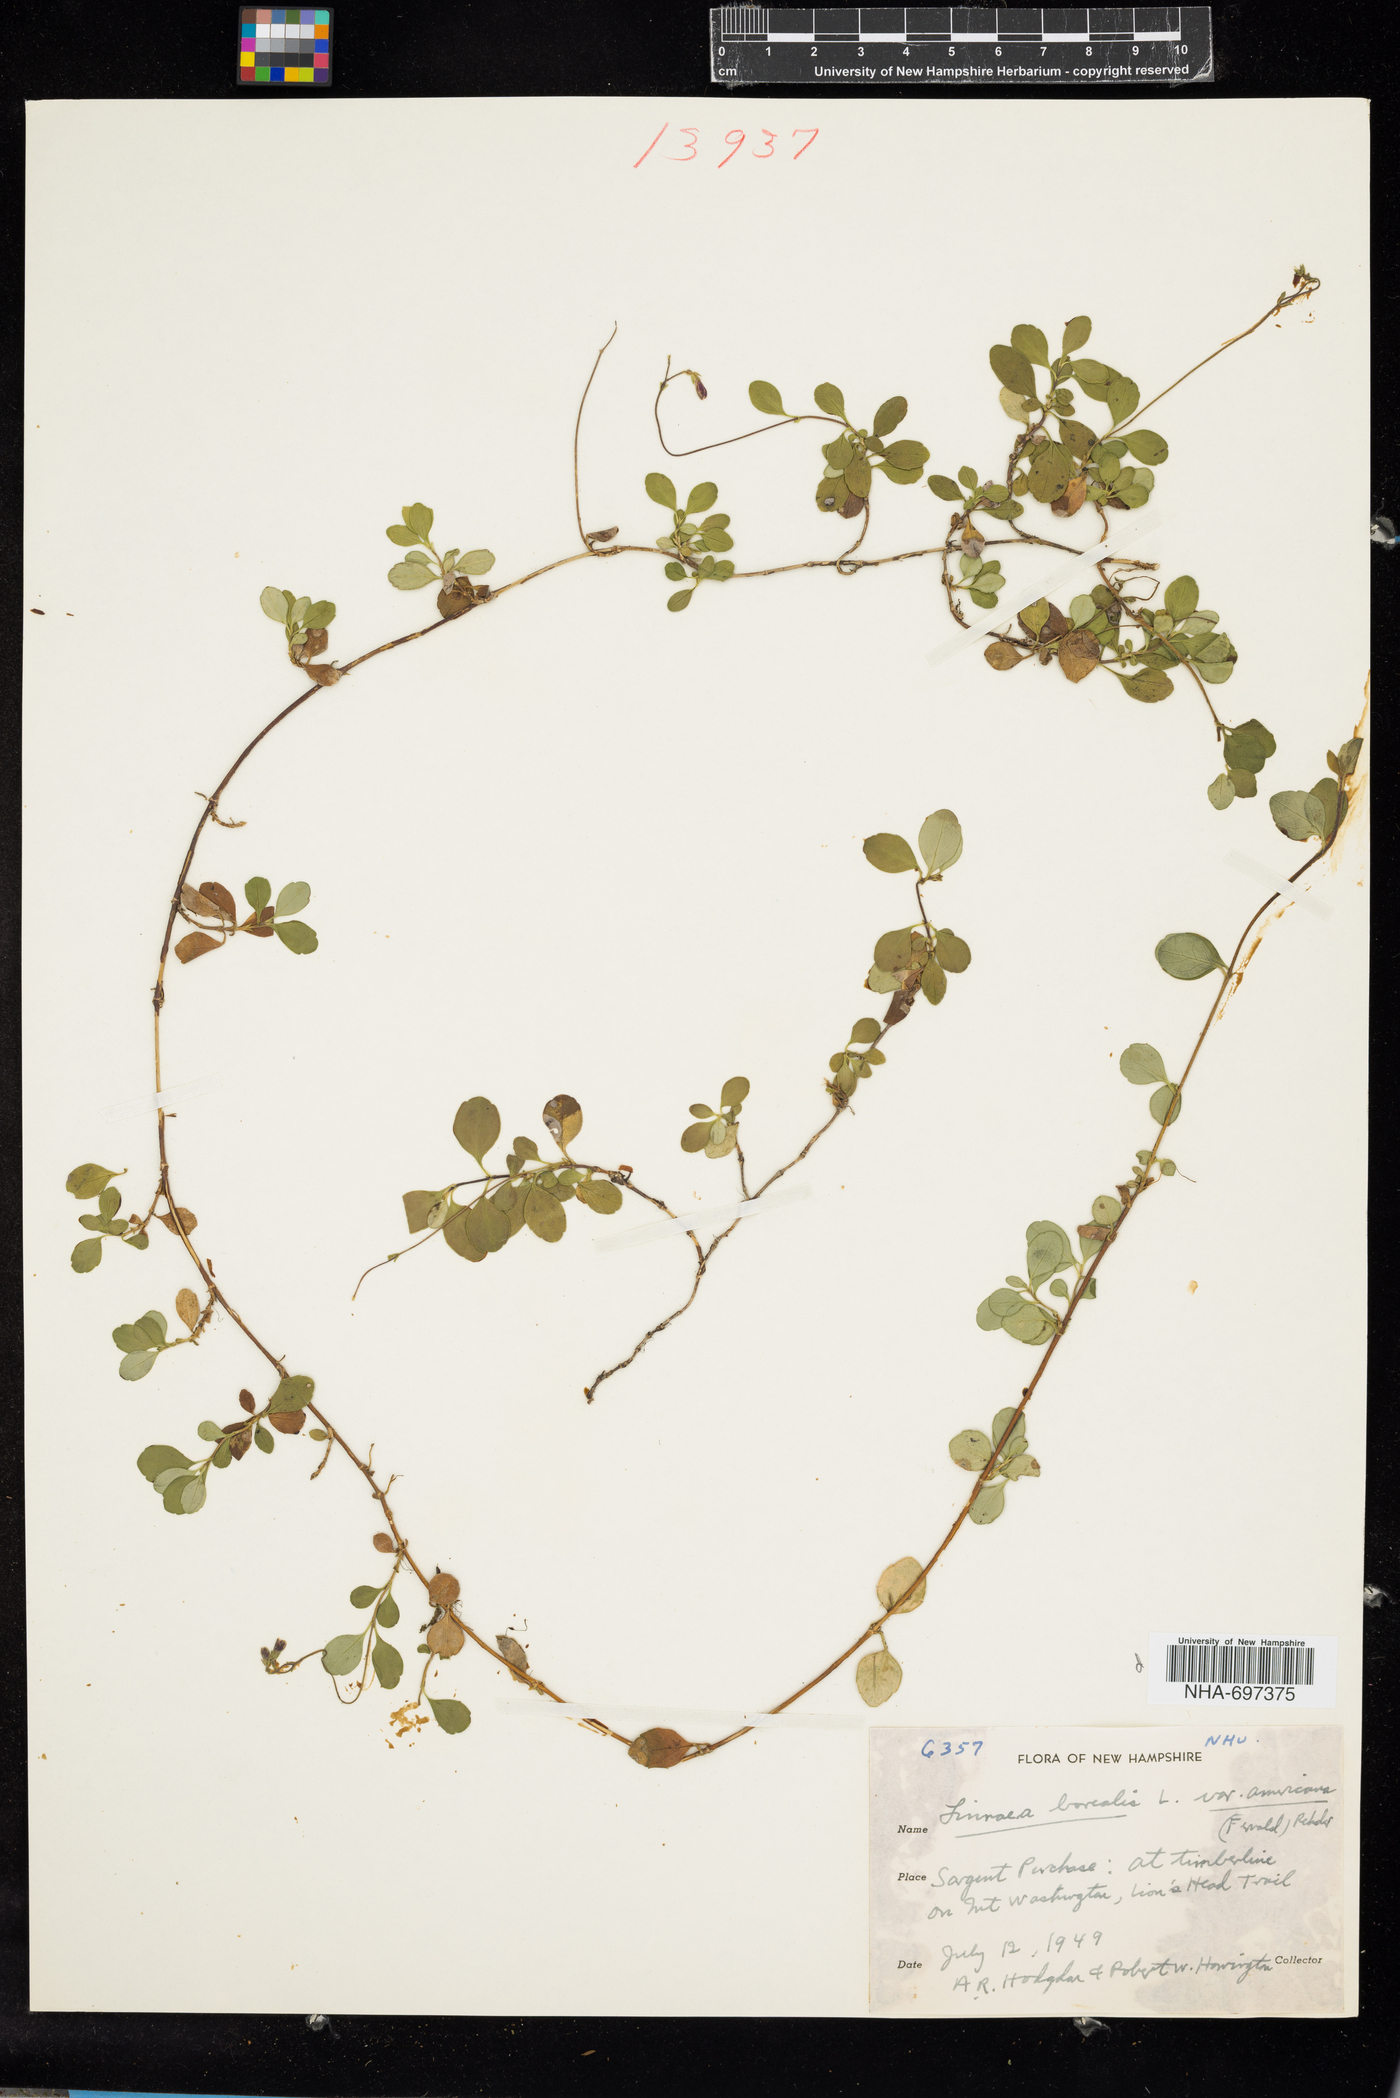 Linnaea image